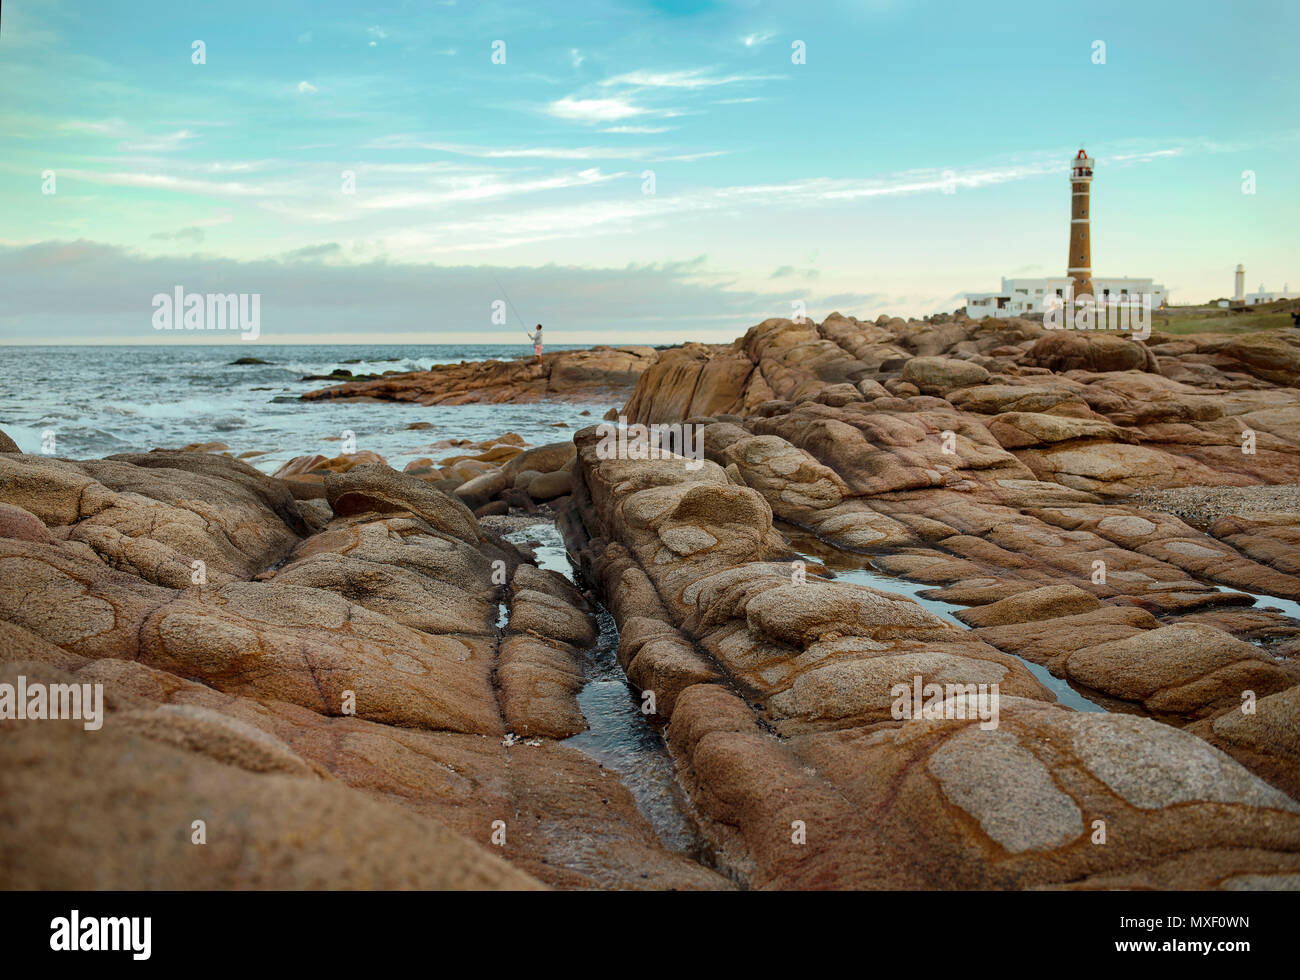 La suggestiva costa di Cabo Polonio con le sue rocce lisce e il faro sullo sfondo. Patrimonio mondiale dell'UNESCO. Uruguay, Sud America Foto Stock